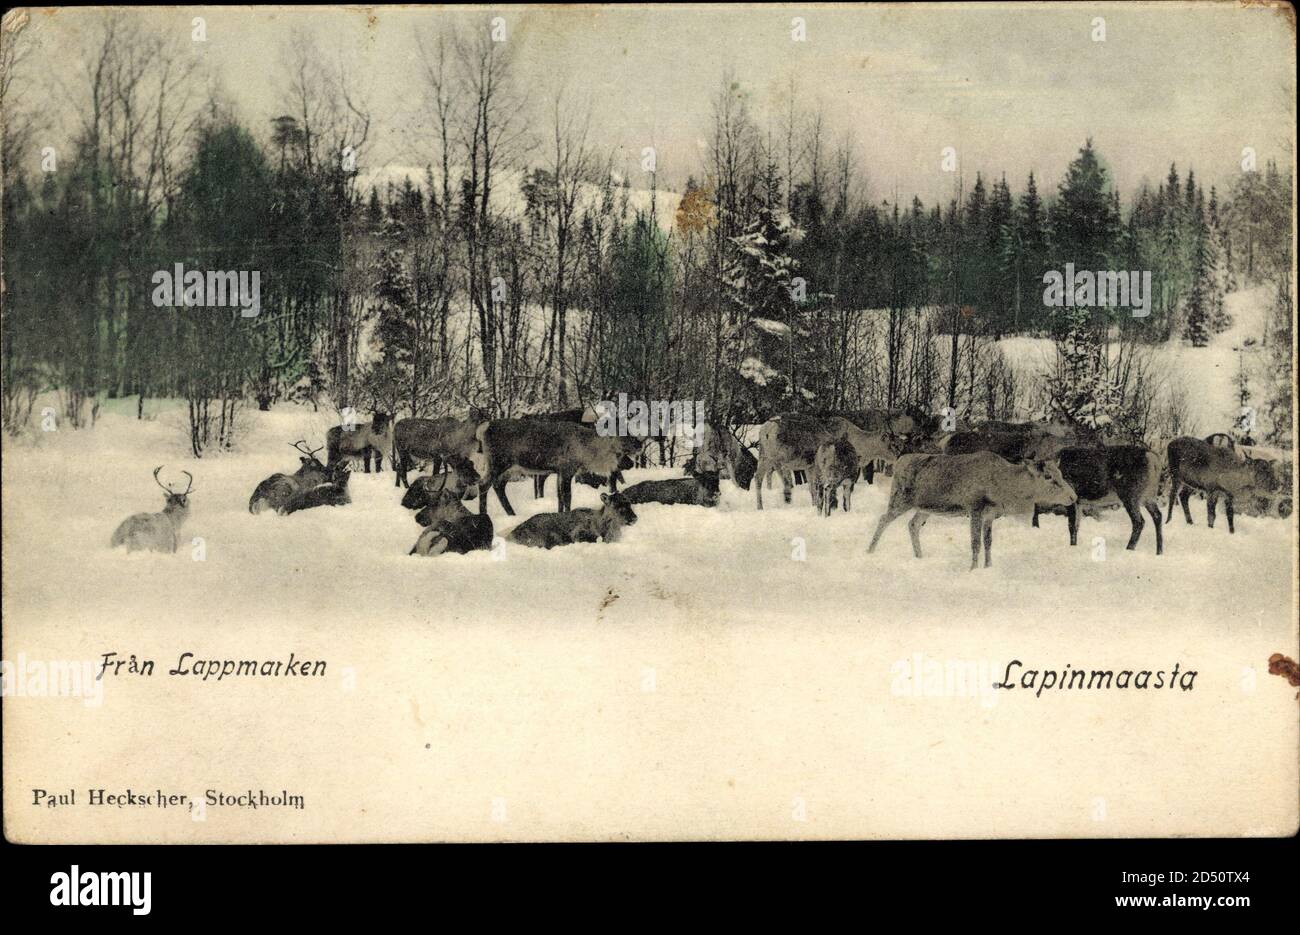 Schweden, Lapinmaasta, Elchgruppe im Winter | utilizzo in tutto il mondo Foto Stock